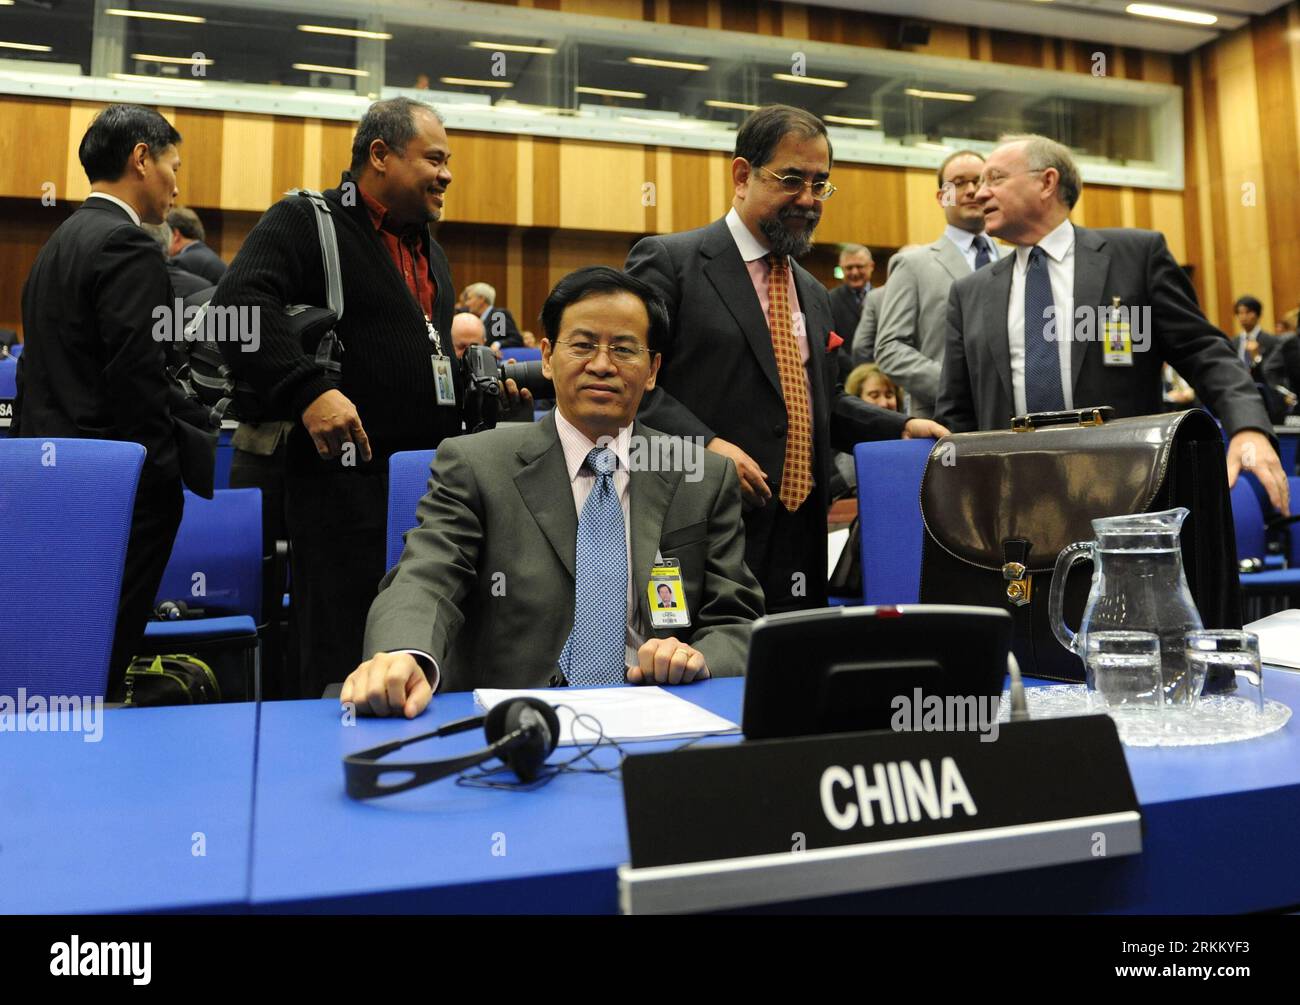 Bildnummer: 56290773 Datum: 17.11.2011 Copyright: imago/Xinhua (111117) - VIENNA, 17 novembre 2011 (Xinhua) - Cheng Jingye (C), ambasciatore cinese presso l'AIEA, è visto davanti alla conferenza del Consiglio di amministrazione presso la sede dell'Agenzia internazionale per l'energia atomica (AIEA) a Vienna il 17 novembre 2011. La conferenza di due giorni ha attirato maggiore attenzione in quanto la relazione dell' AIEA dell' 8 novembre indica che l' Iran ha svolto attività rilevanti per lo sviluppo di un ordigno nucleare esplosivo . (Xinhua/Xu Liang) (qs) AUSTRIA-VIENNA-AIEA PUBLICATIONxNOTxINxCHN People Politik IAEO AIEA Internationale ATO Foto Stock